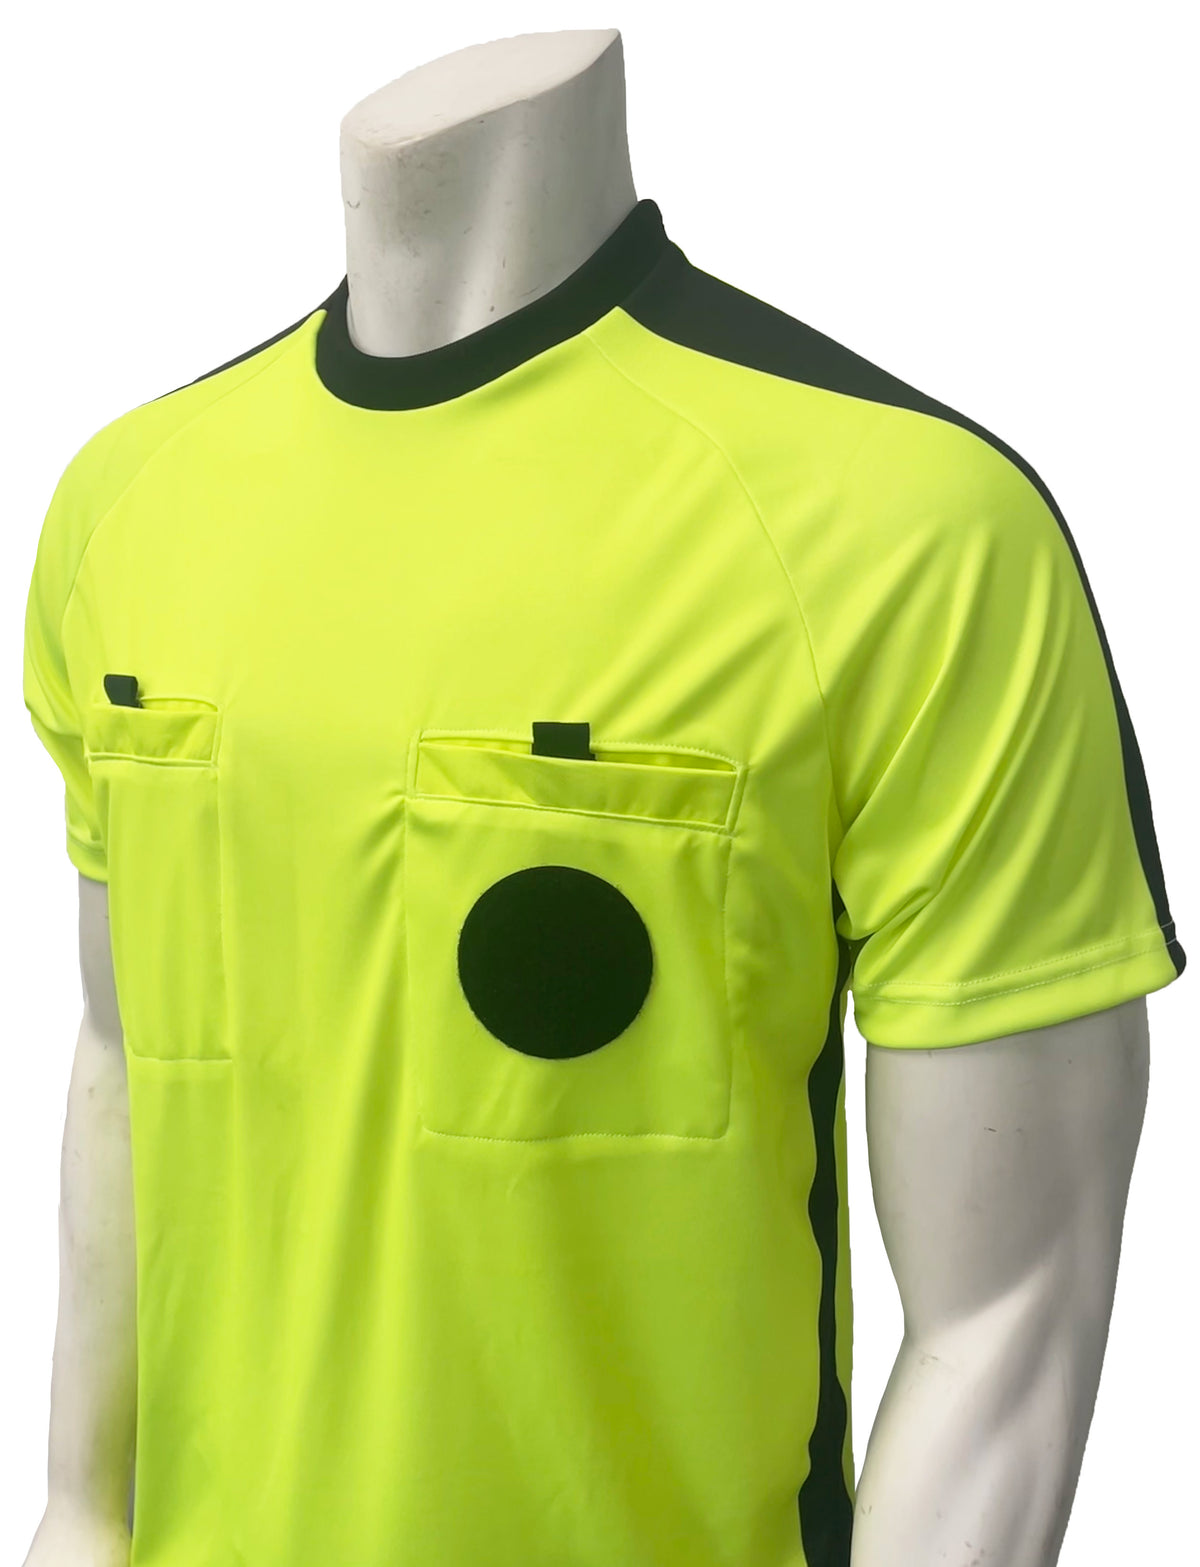 smitty | Estados Unidos 900NCAA | Camiseta colegiada de árbitro de fútbol de manga corta para hombre | Funcionarios universitarios de EE. UU.